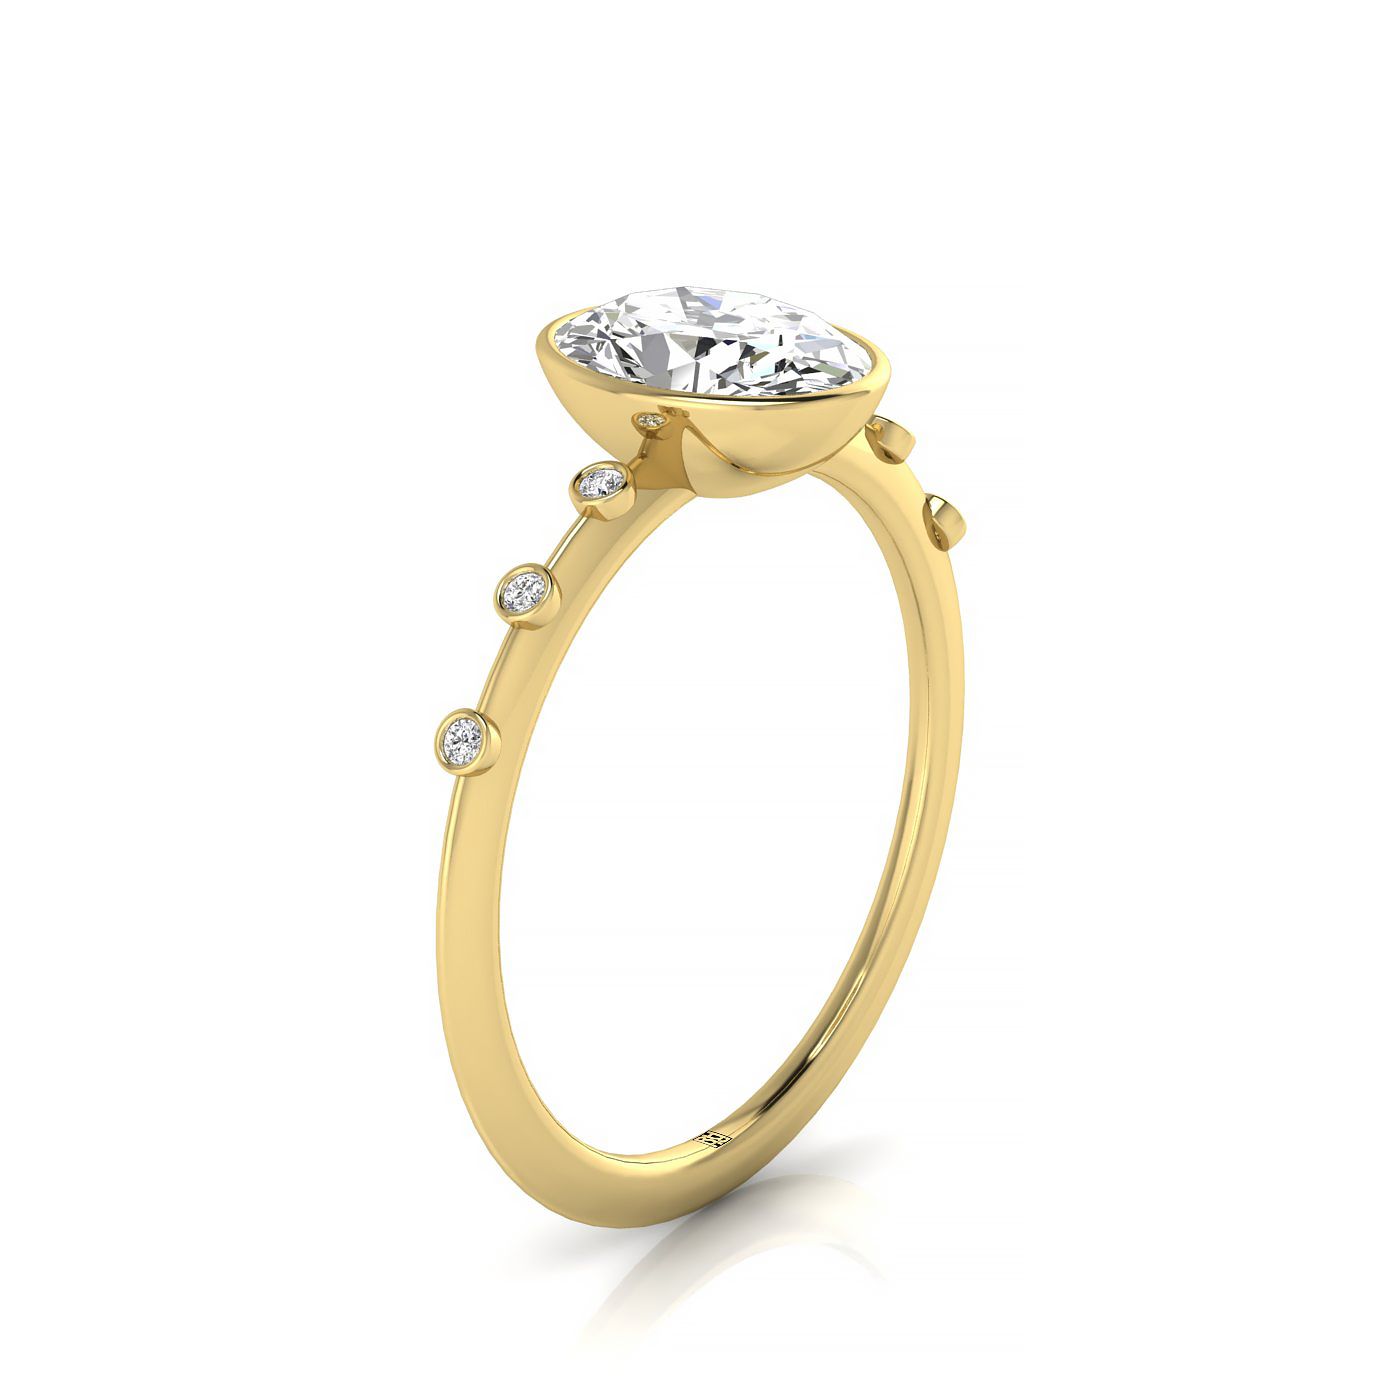 18ky Bezel Set Oval Engagement Ring With 6 Bezel Set Round Diamonds On Shank